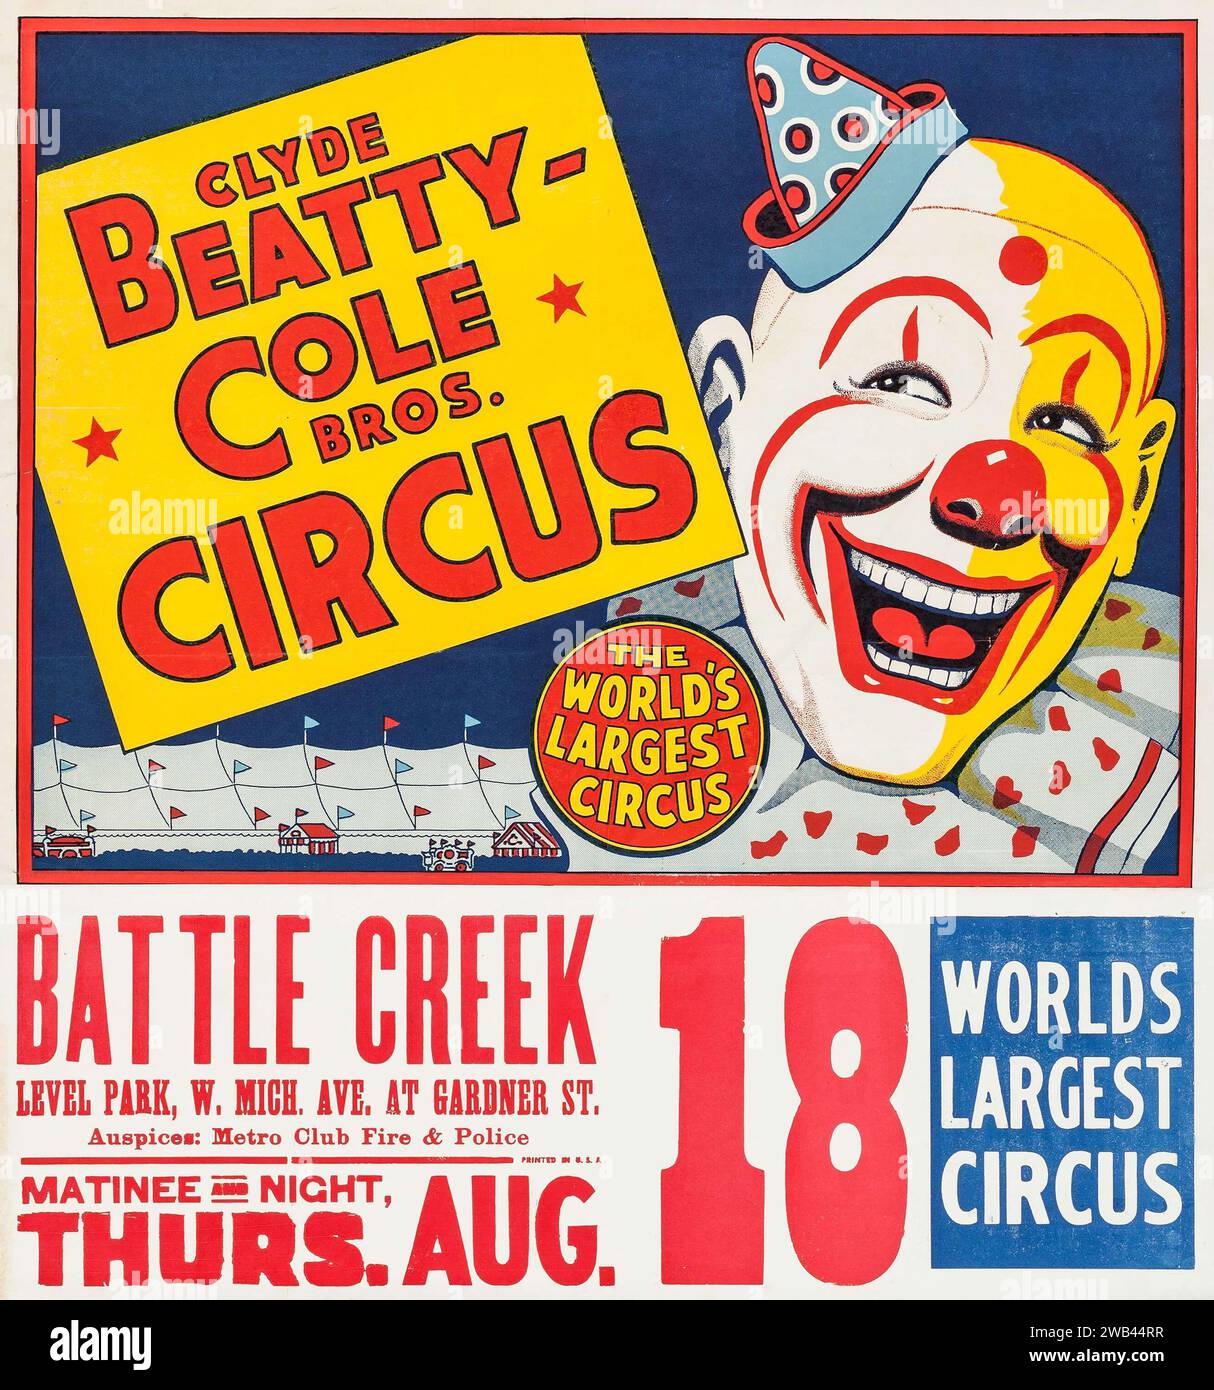 Affiche de cirque feat a clown (Clyde Beatty - Cole Brothers, c. 1958) Banque D'Images